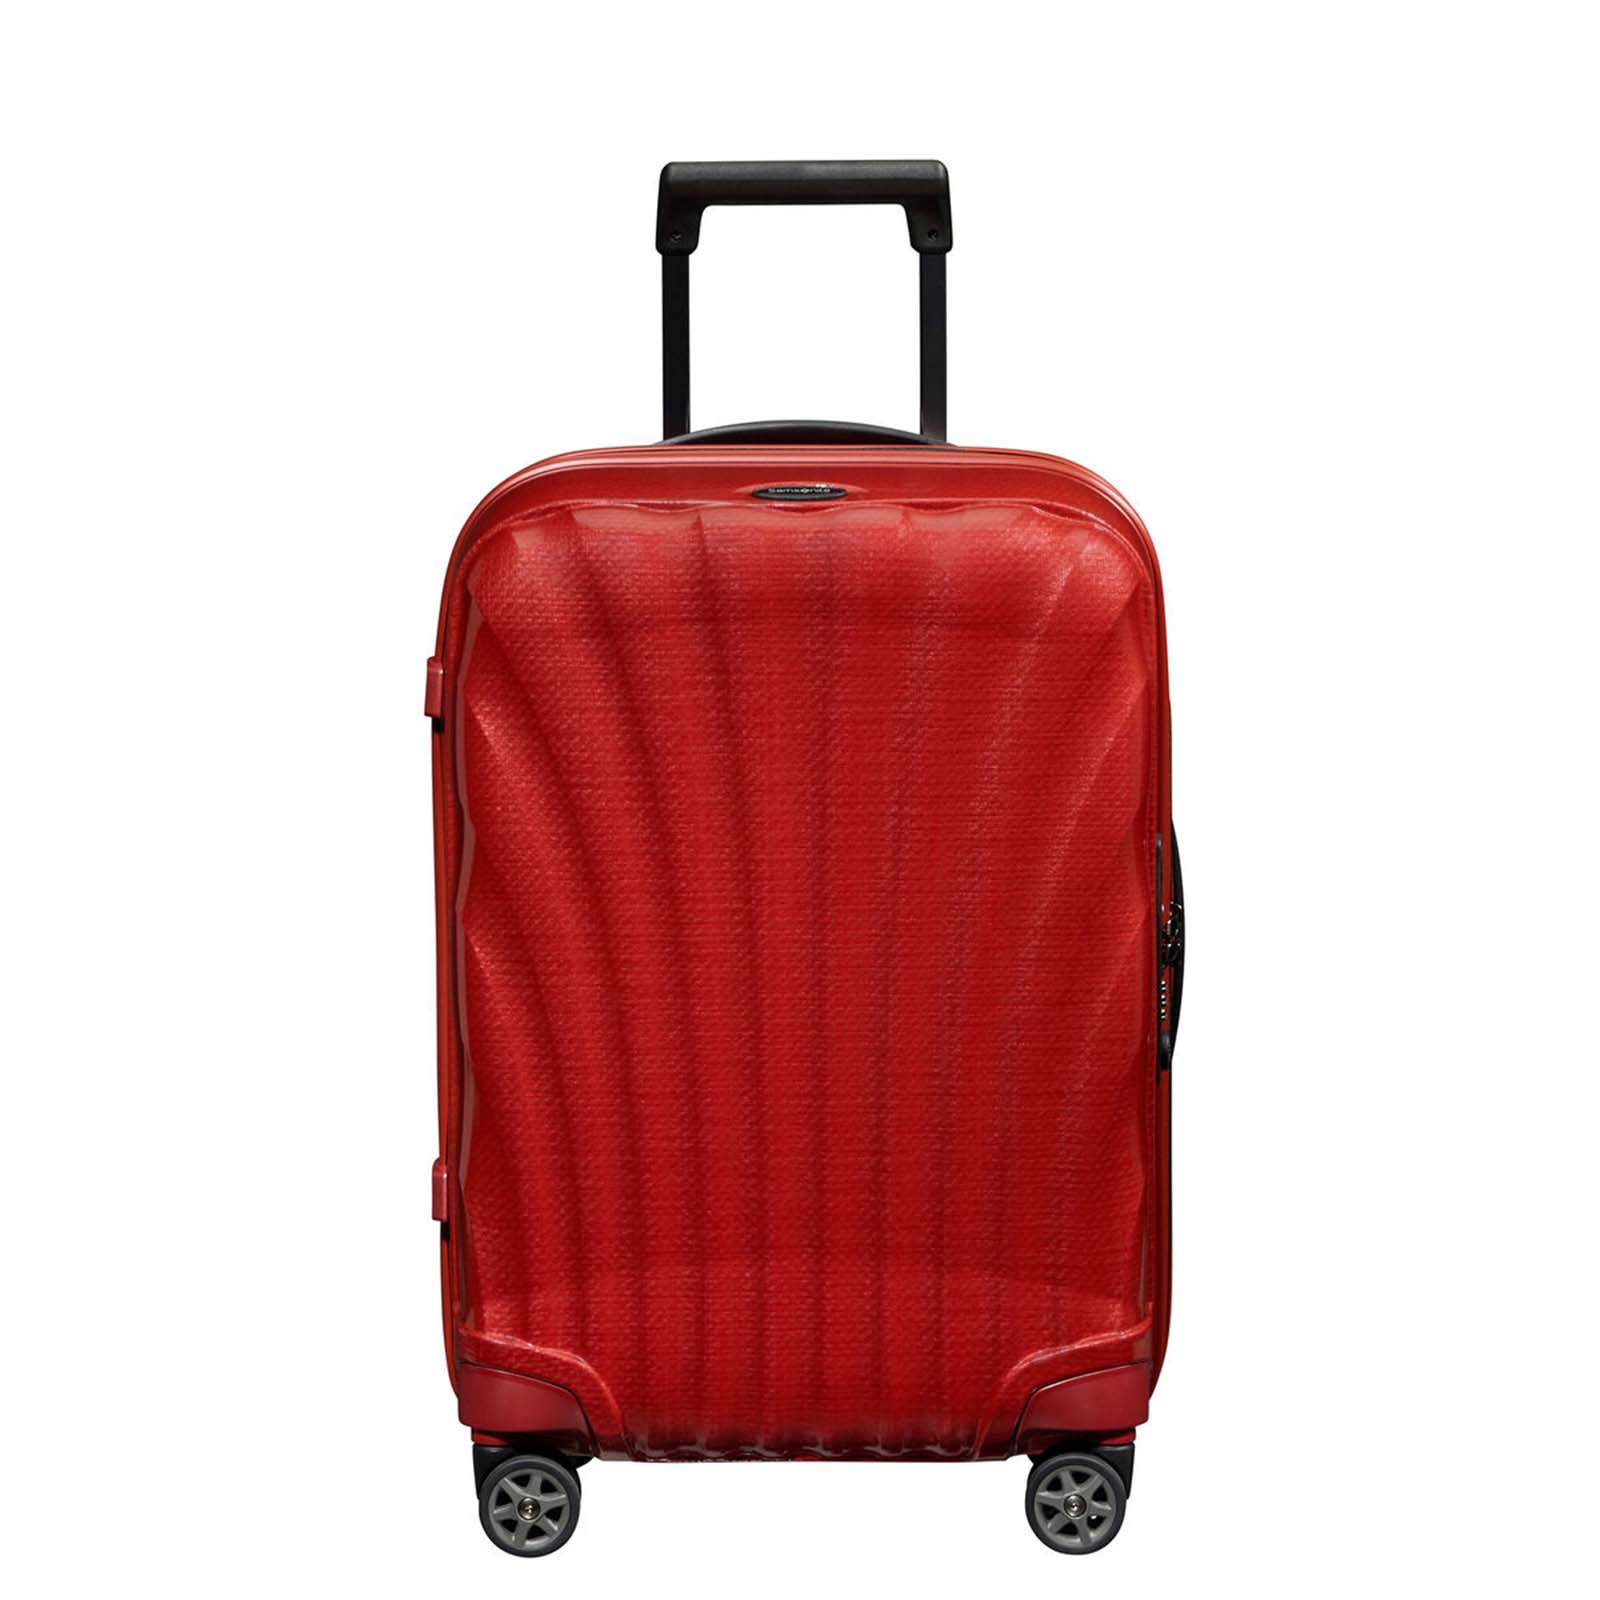 Samsonite-C-Lite-55cm-Suitcase-Chili-Red-Front